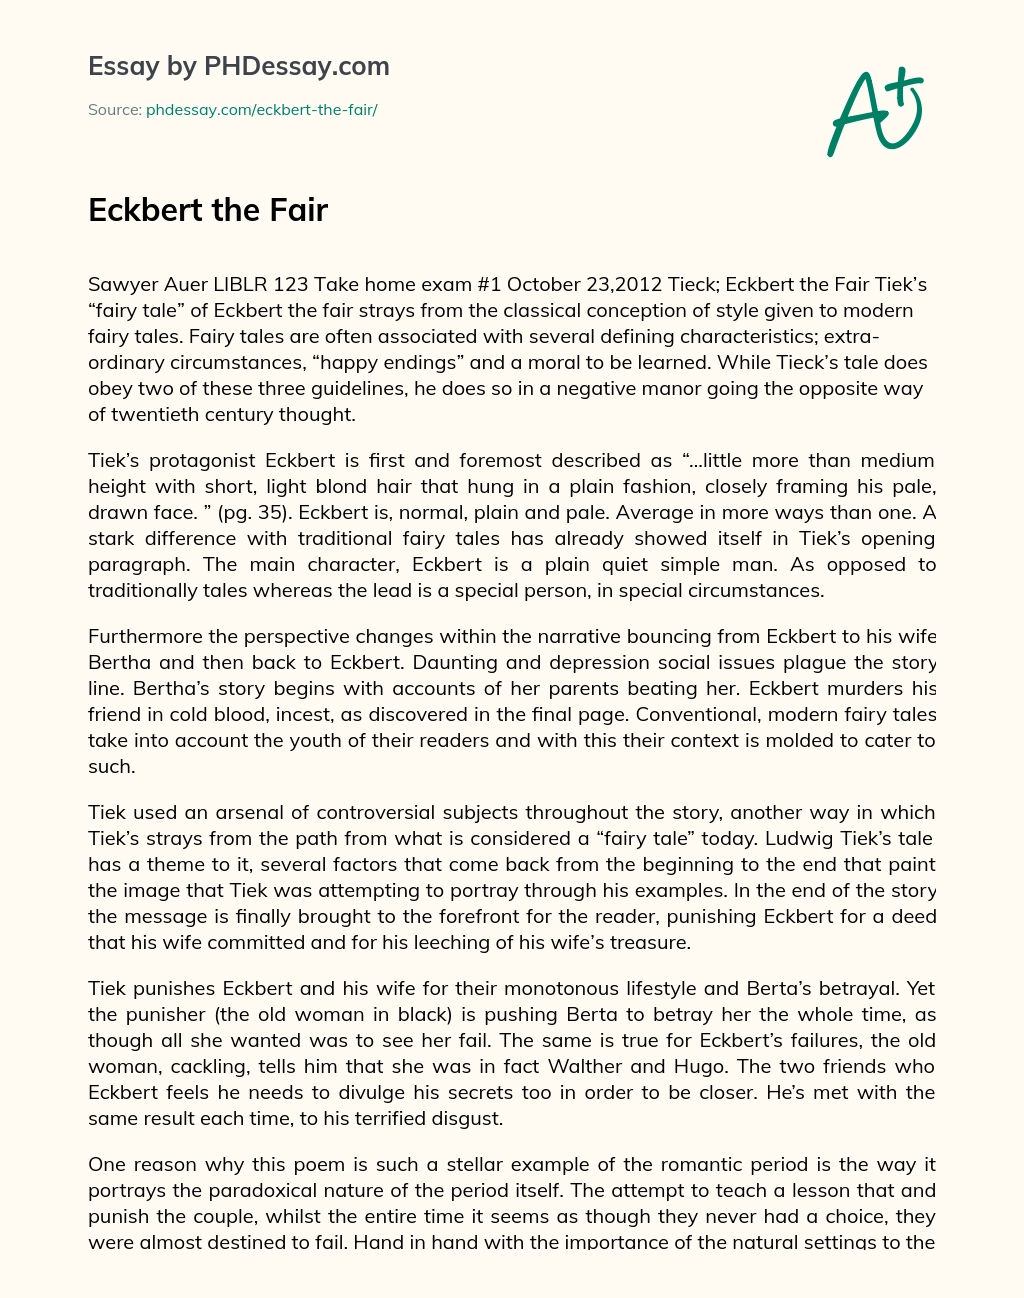 Eckbert the Fair essay